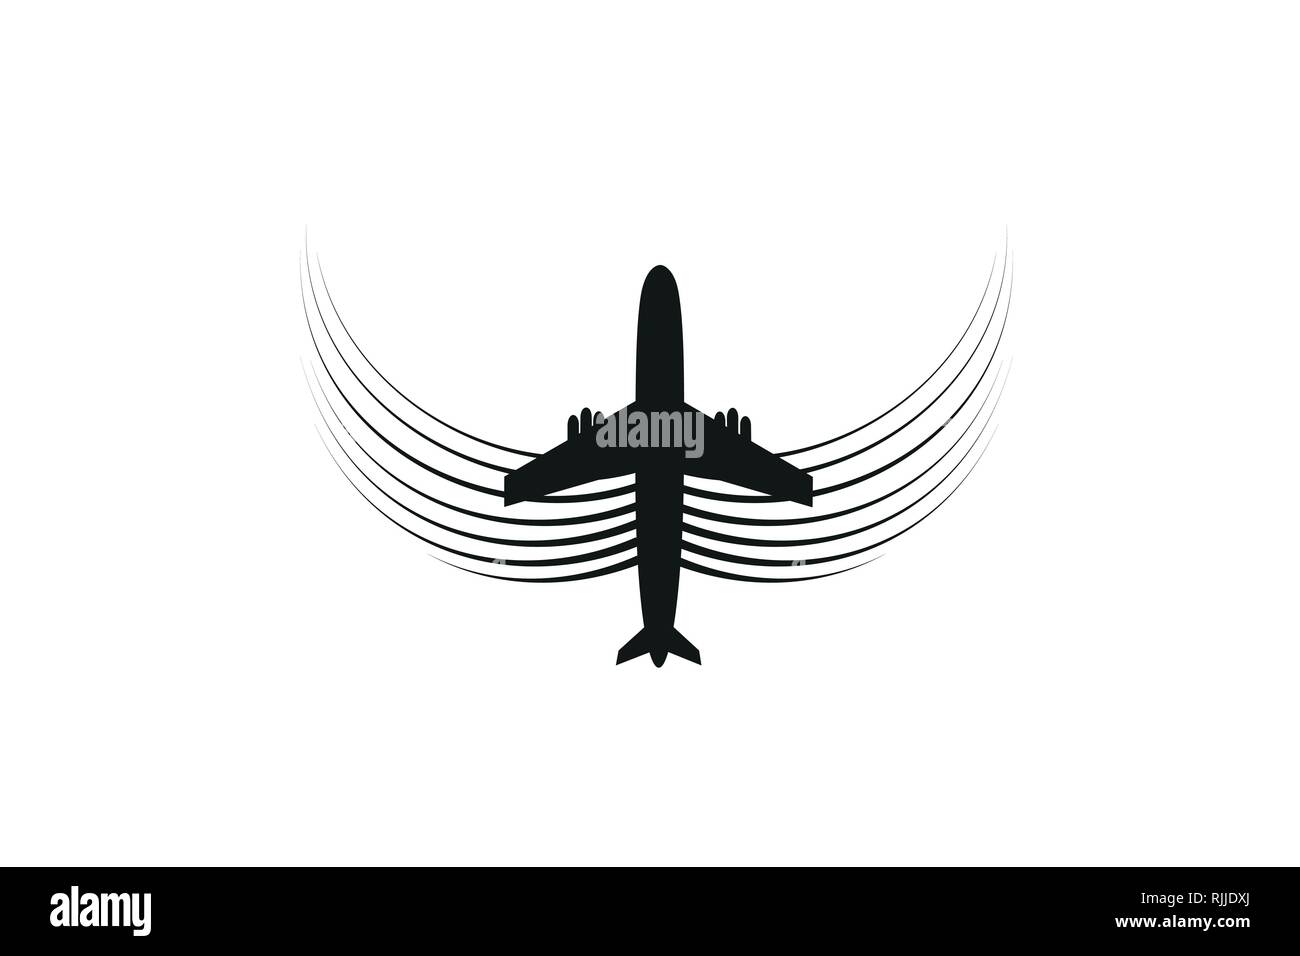 L'avion avec des ailes des mouches sur la ligne. Le tourisme et les voyages. Le waypoint est conçu pour un voyage touristique. et son tracé sur un fond blanc. Vector Illustration de Vecteur